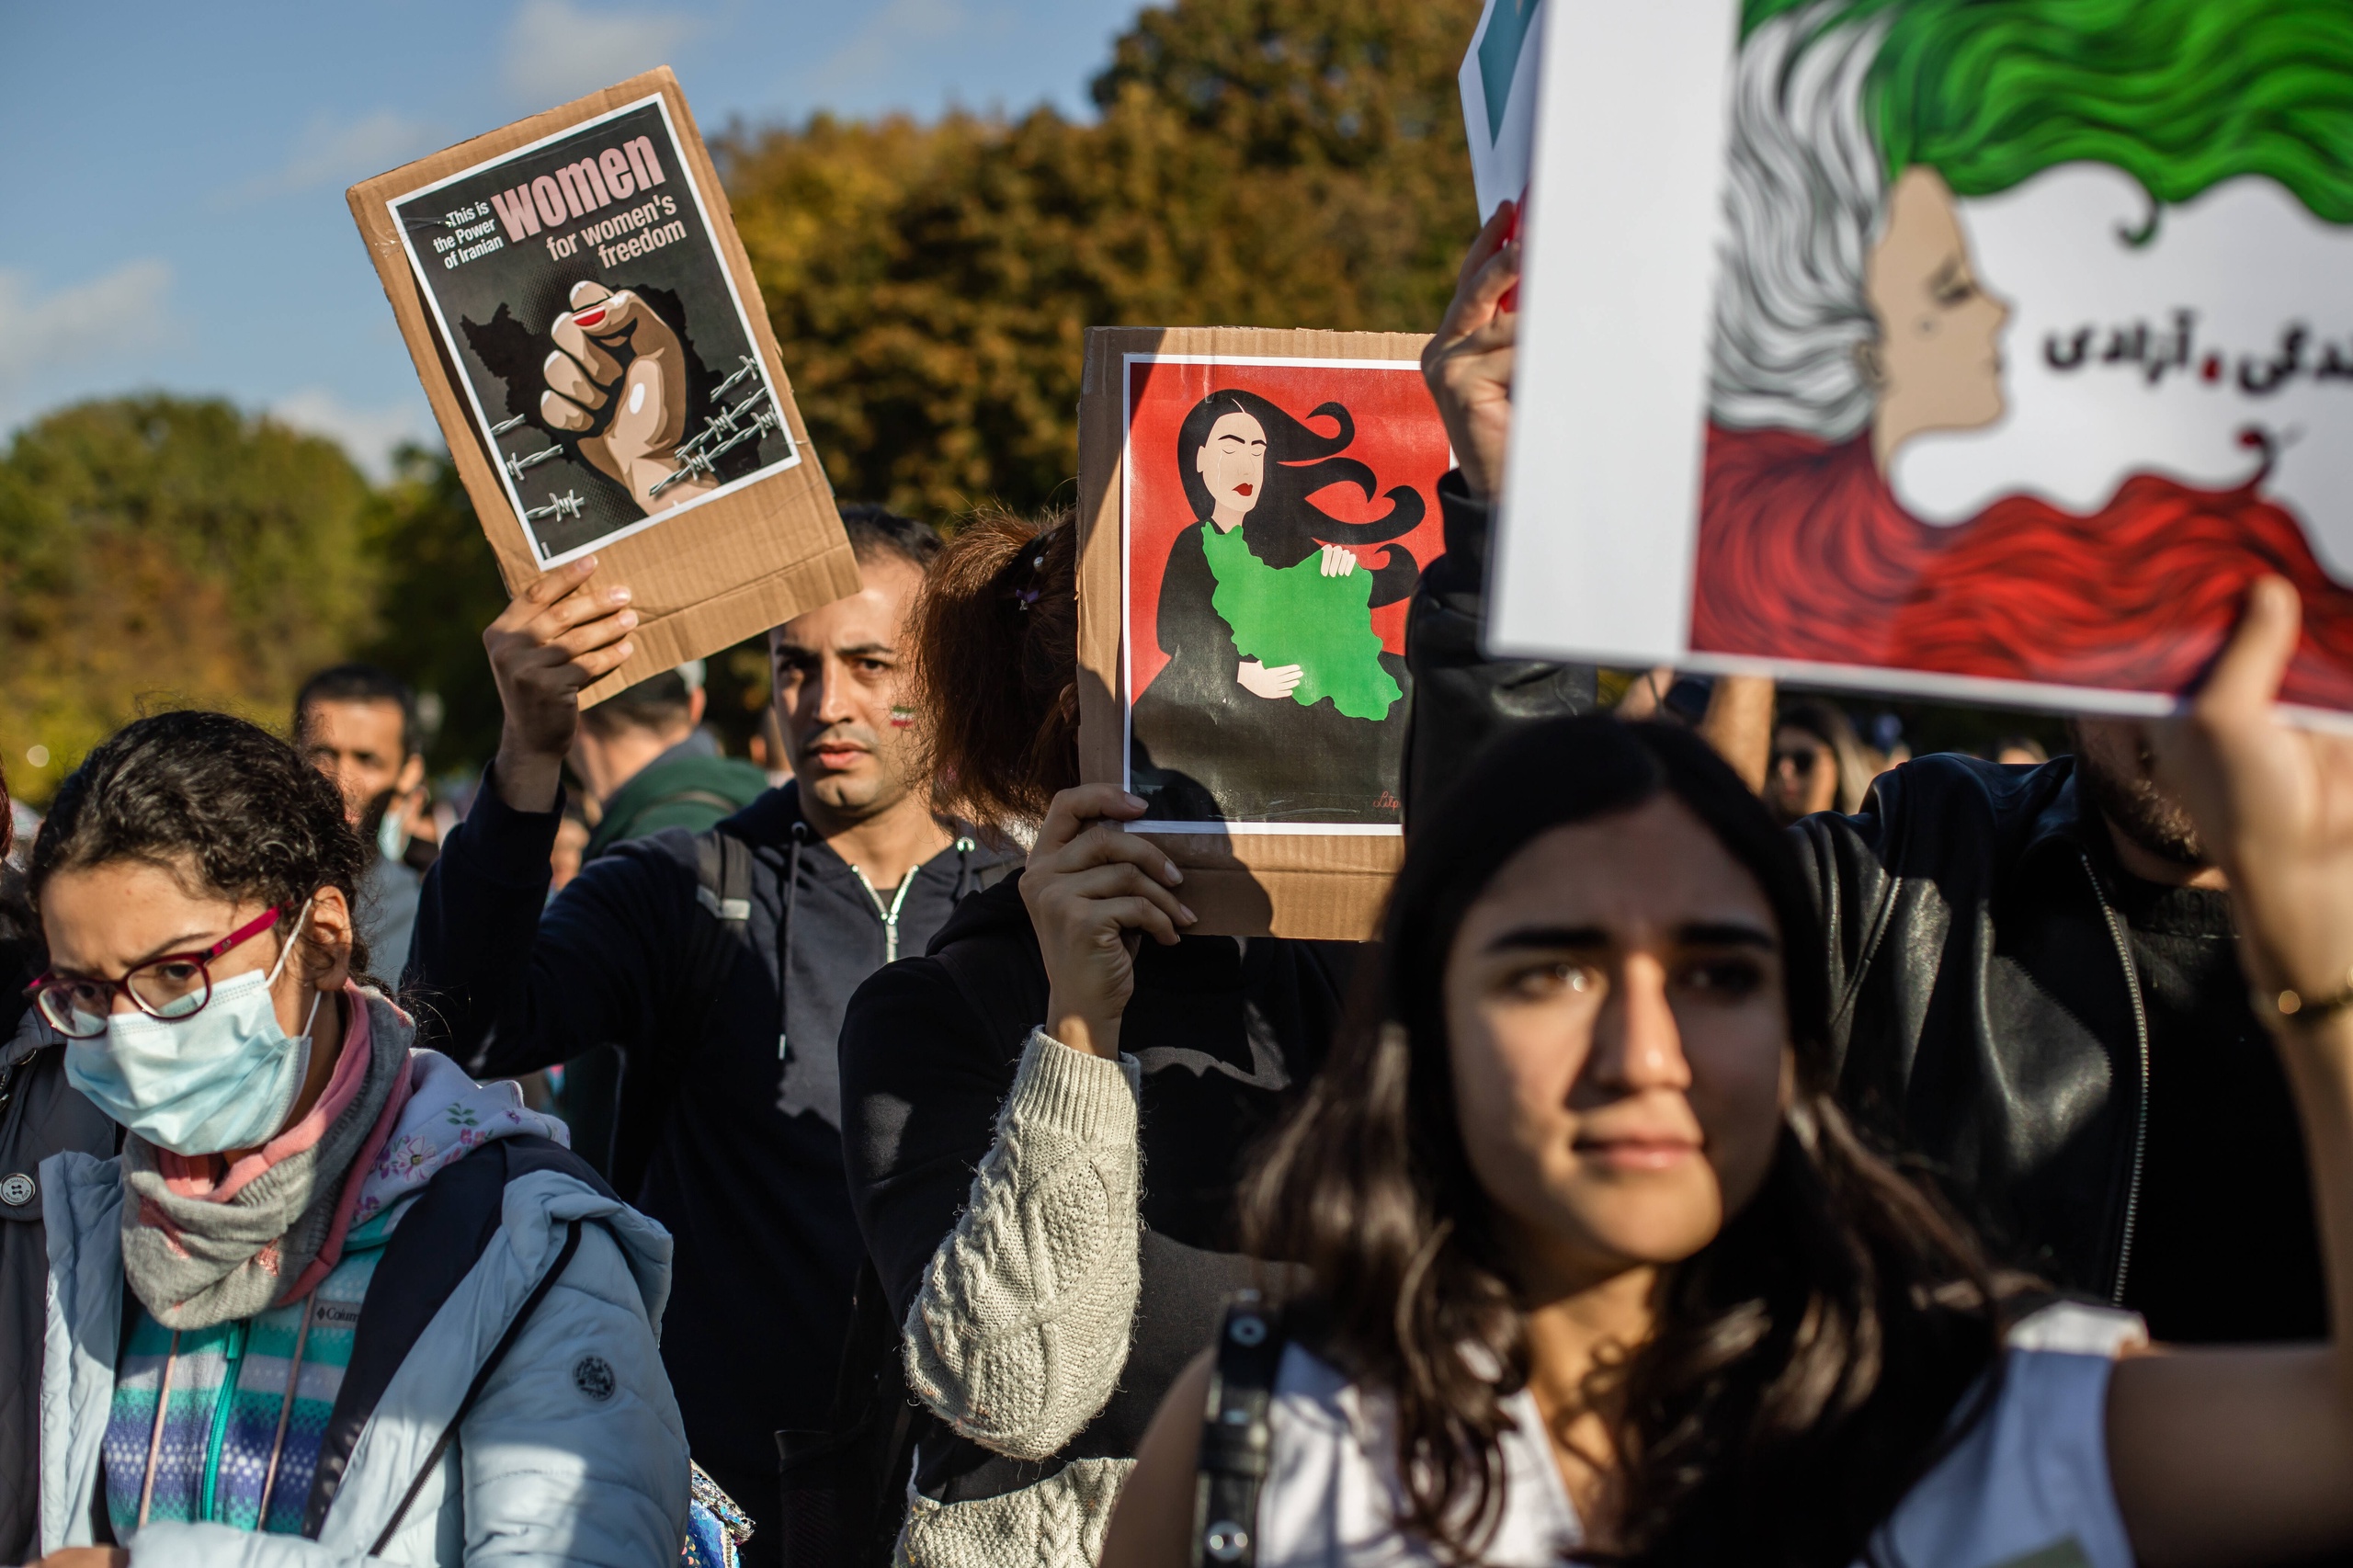 In oktober vond een solidariteitsdemonstratie plaats in Berlijn tegen de onderdrukking van vrouwen in Iran. Ongeveer 80.000 mensen namen deel aan deze demonstratie.